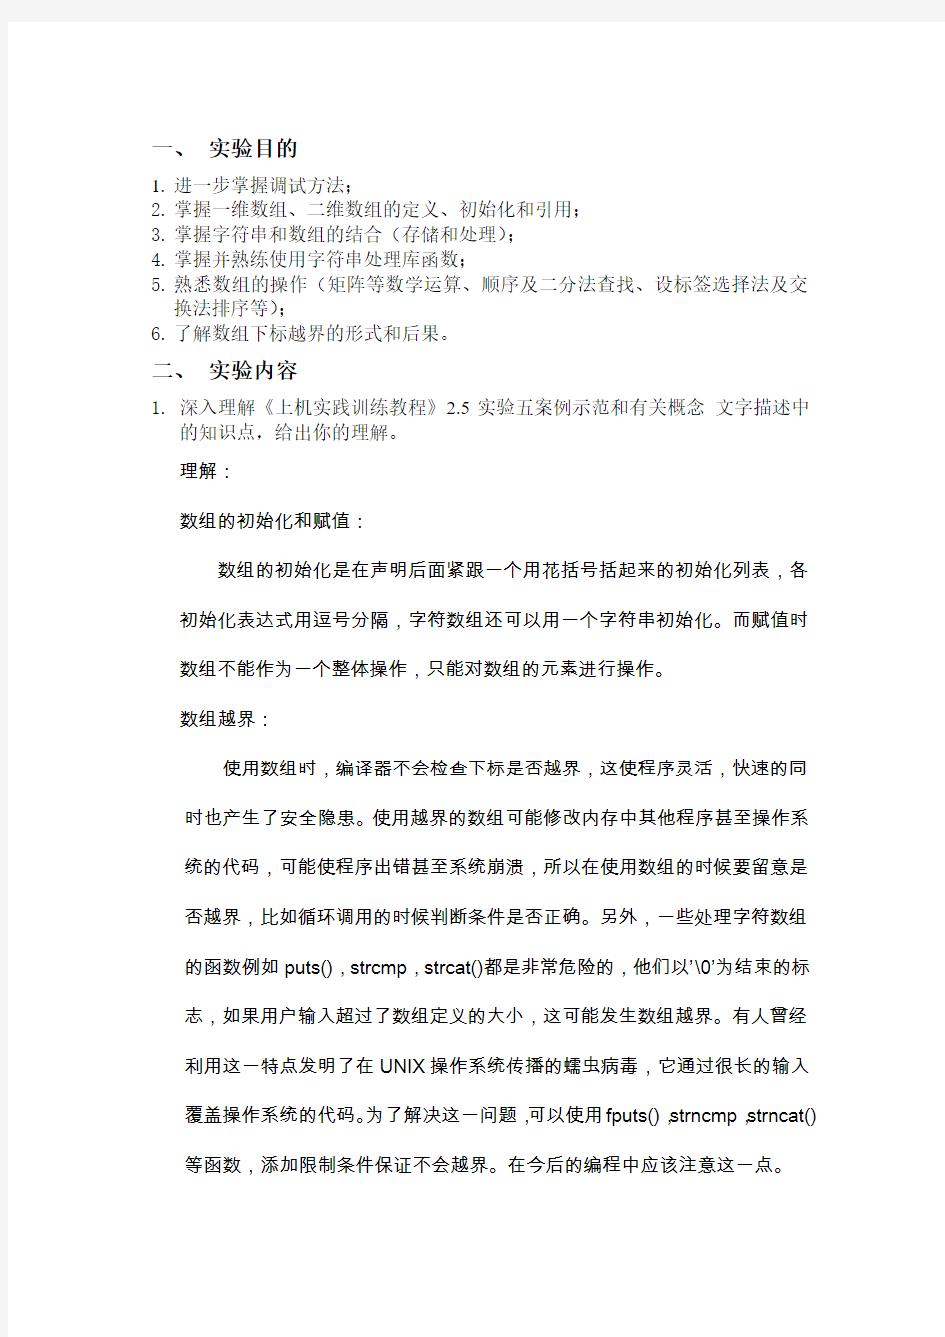 华中科技大学电信学院C语言上机报告